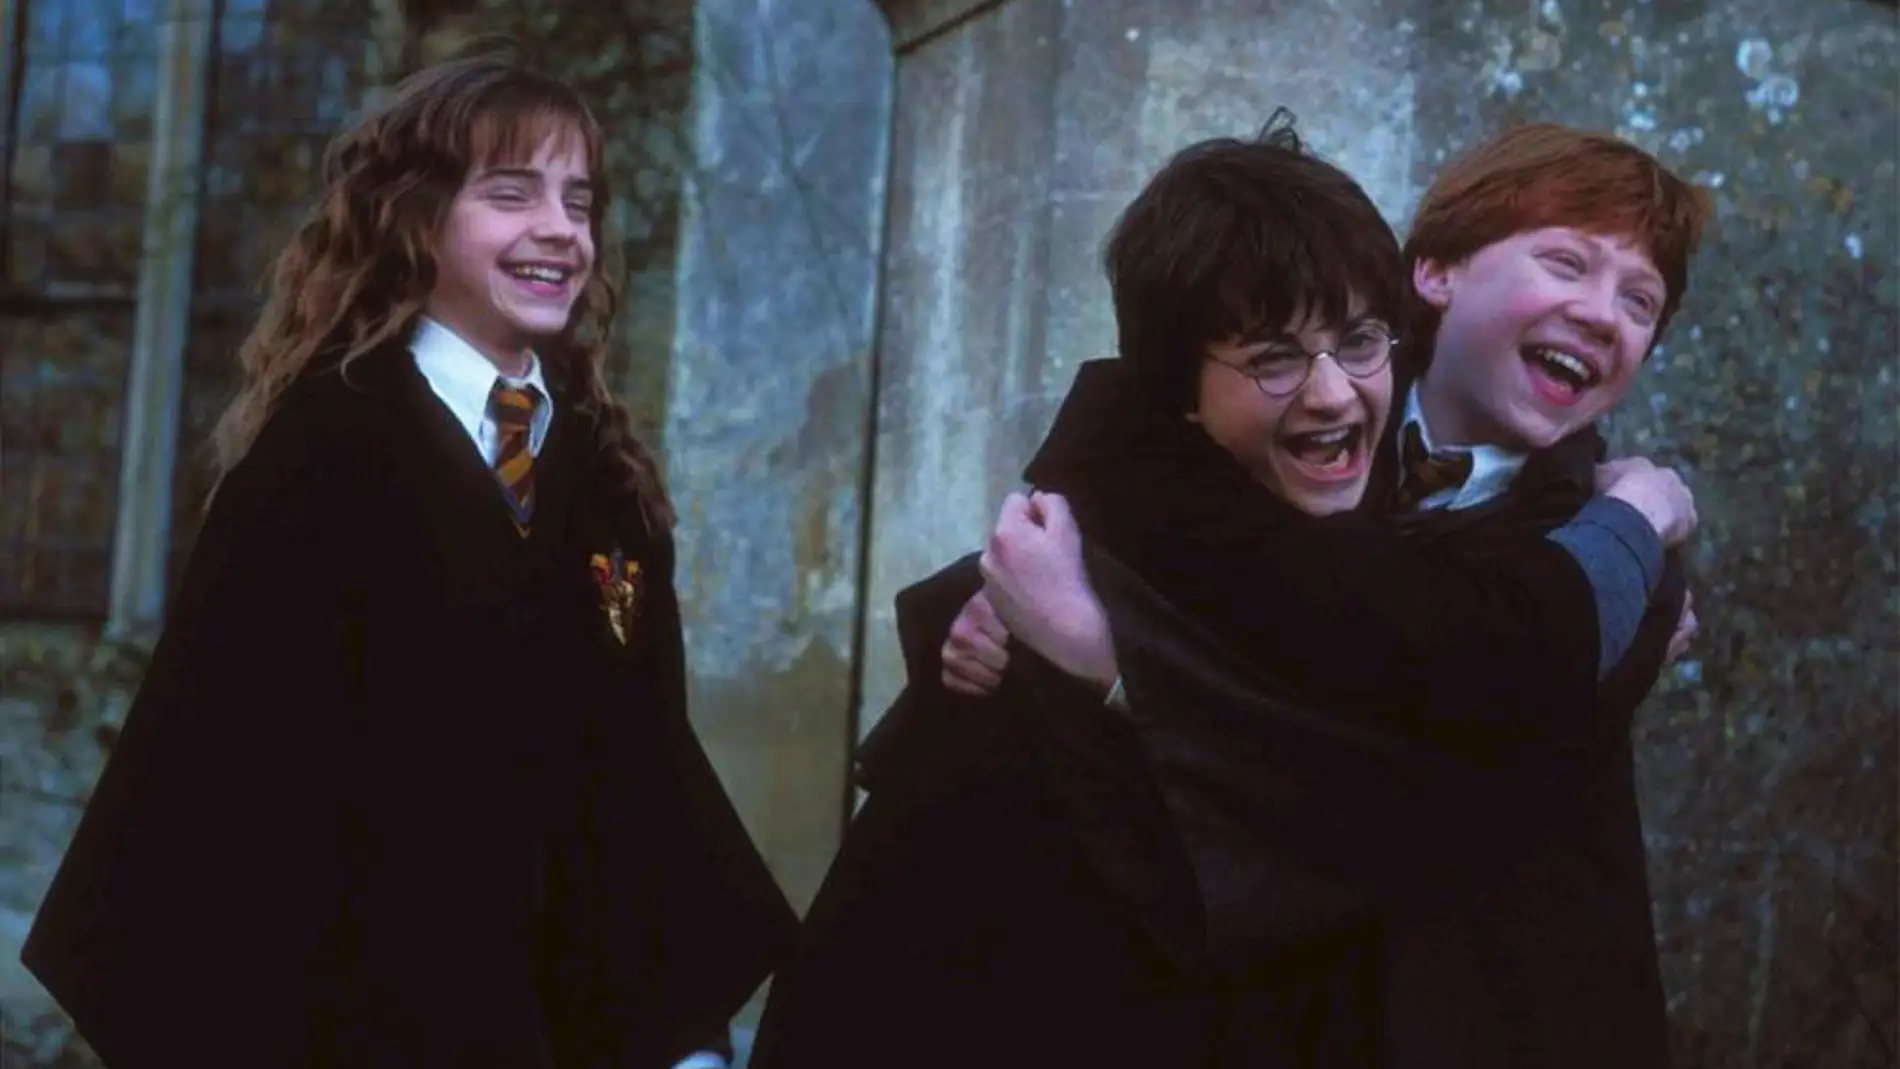 Póster Harry Potter y La Piedra Filosofal 20 Aniversario